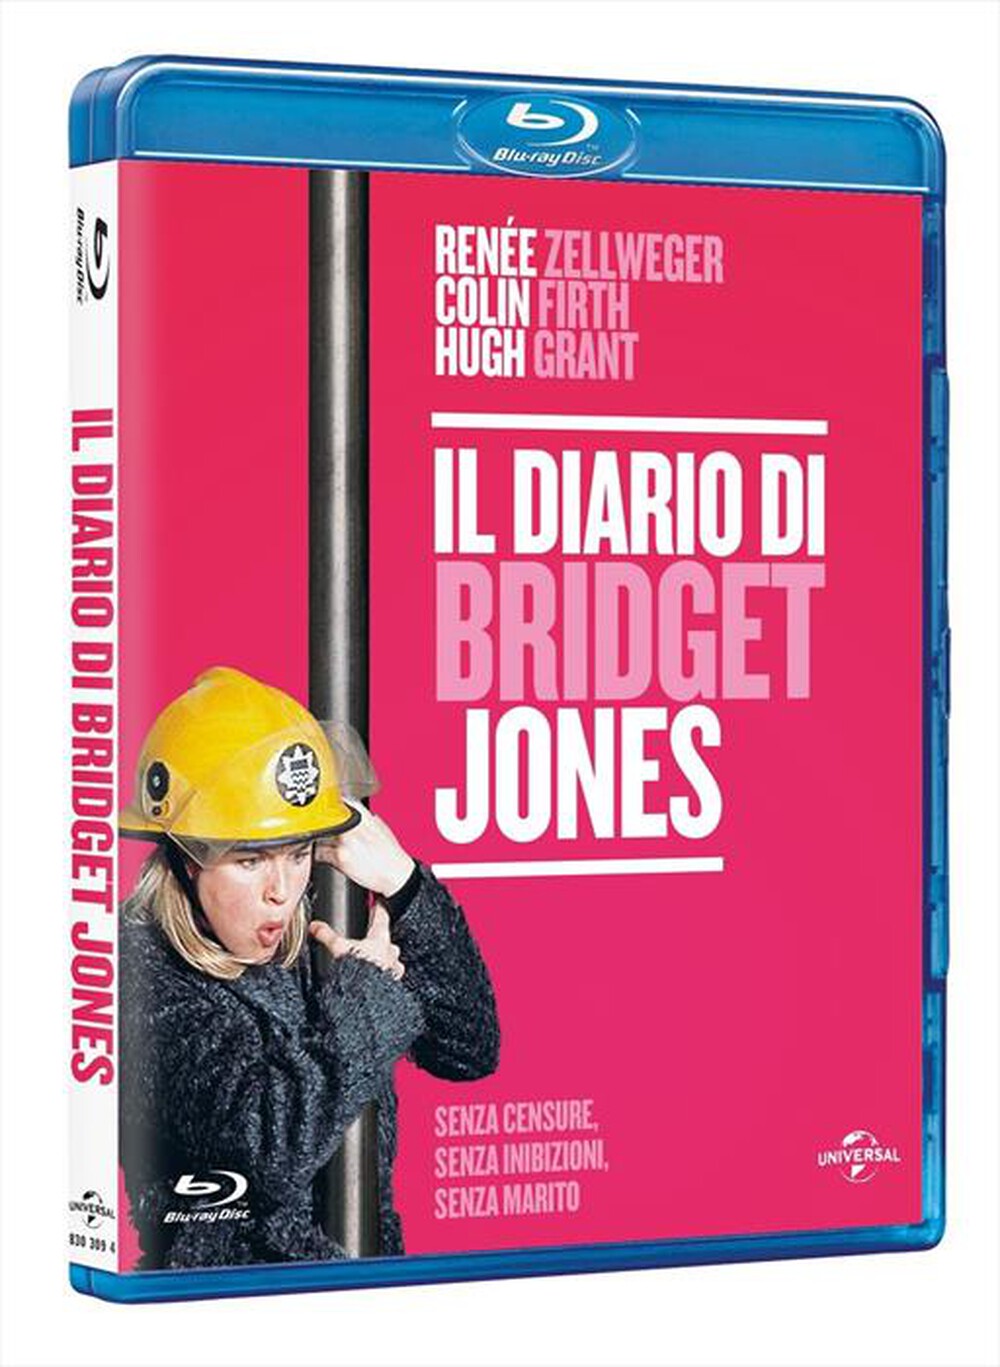 "WARNER HOME VIDEO - Diario Di Bridget Jones (Il)"